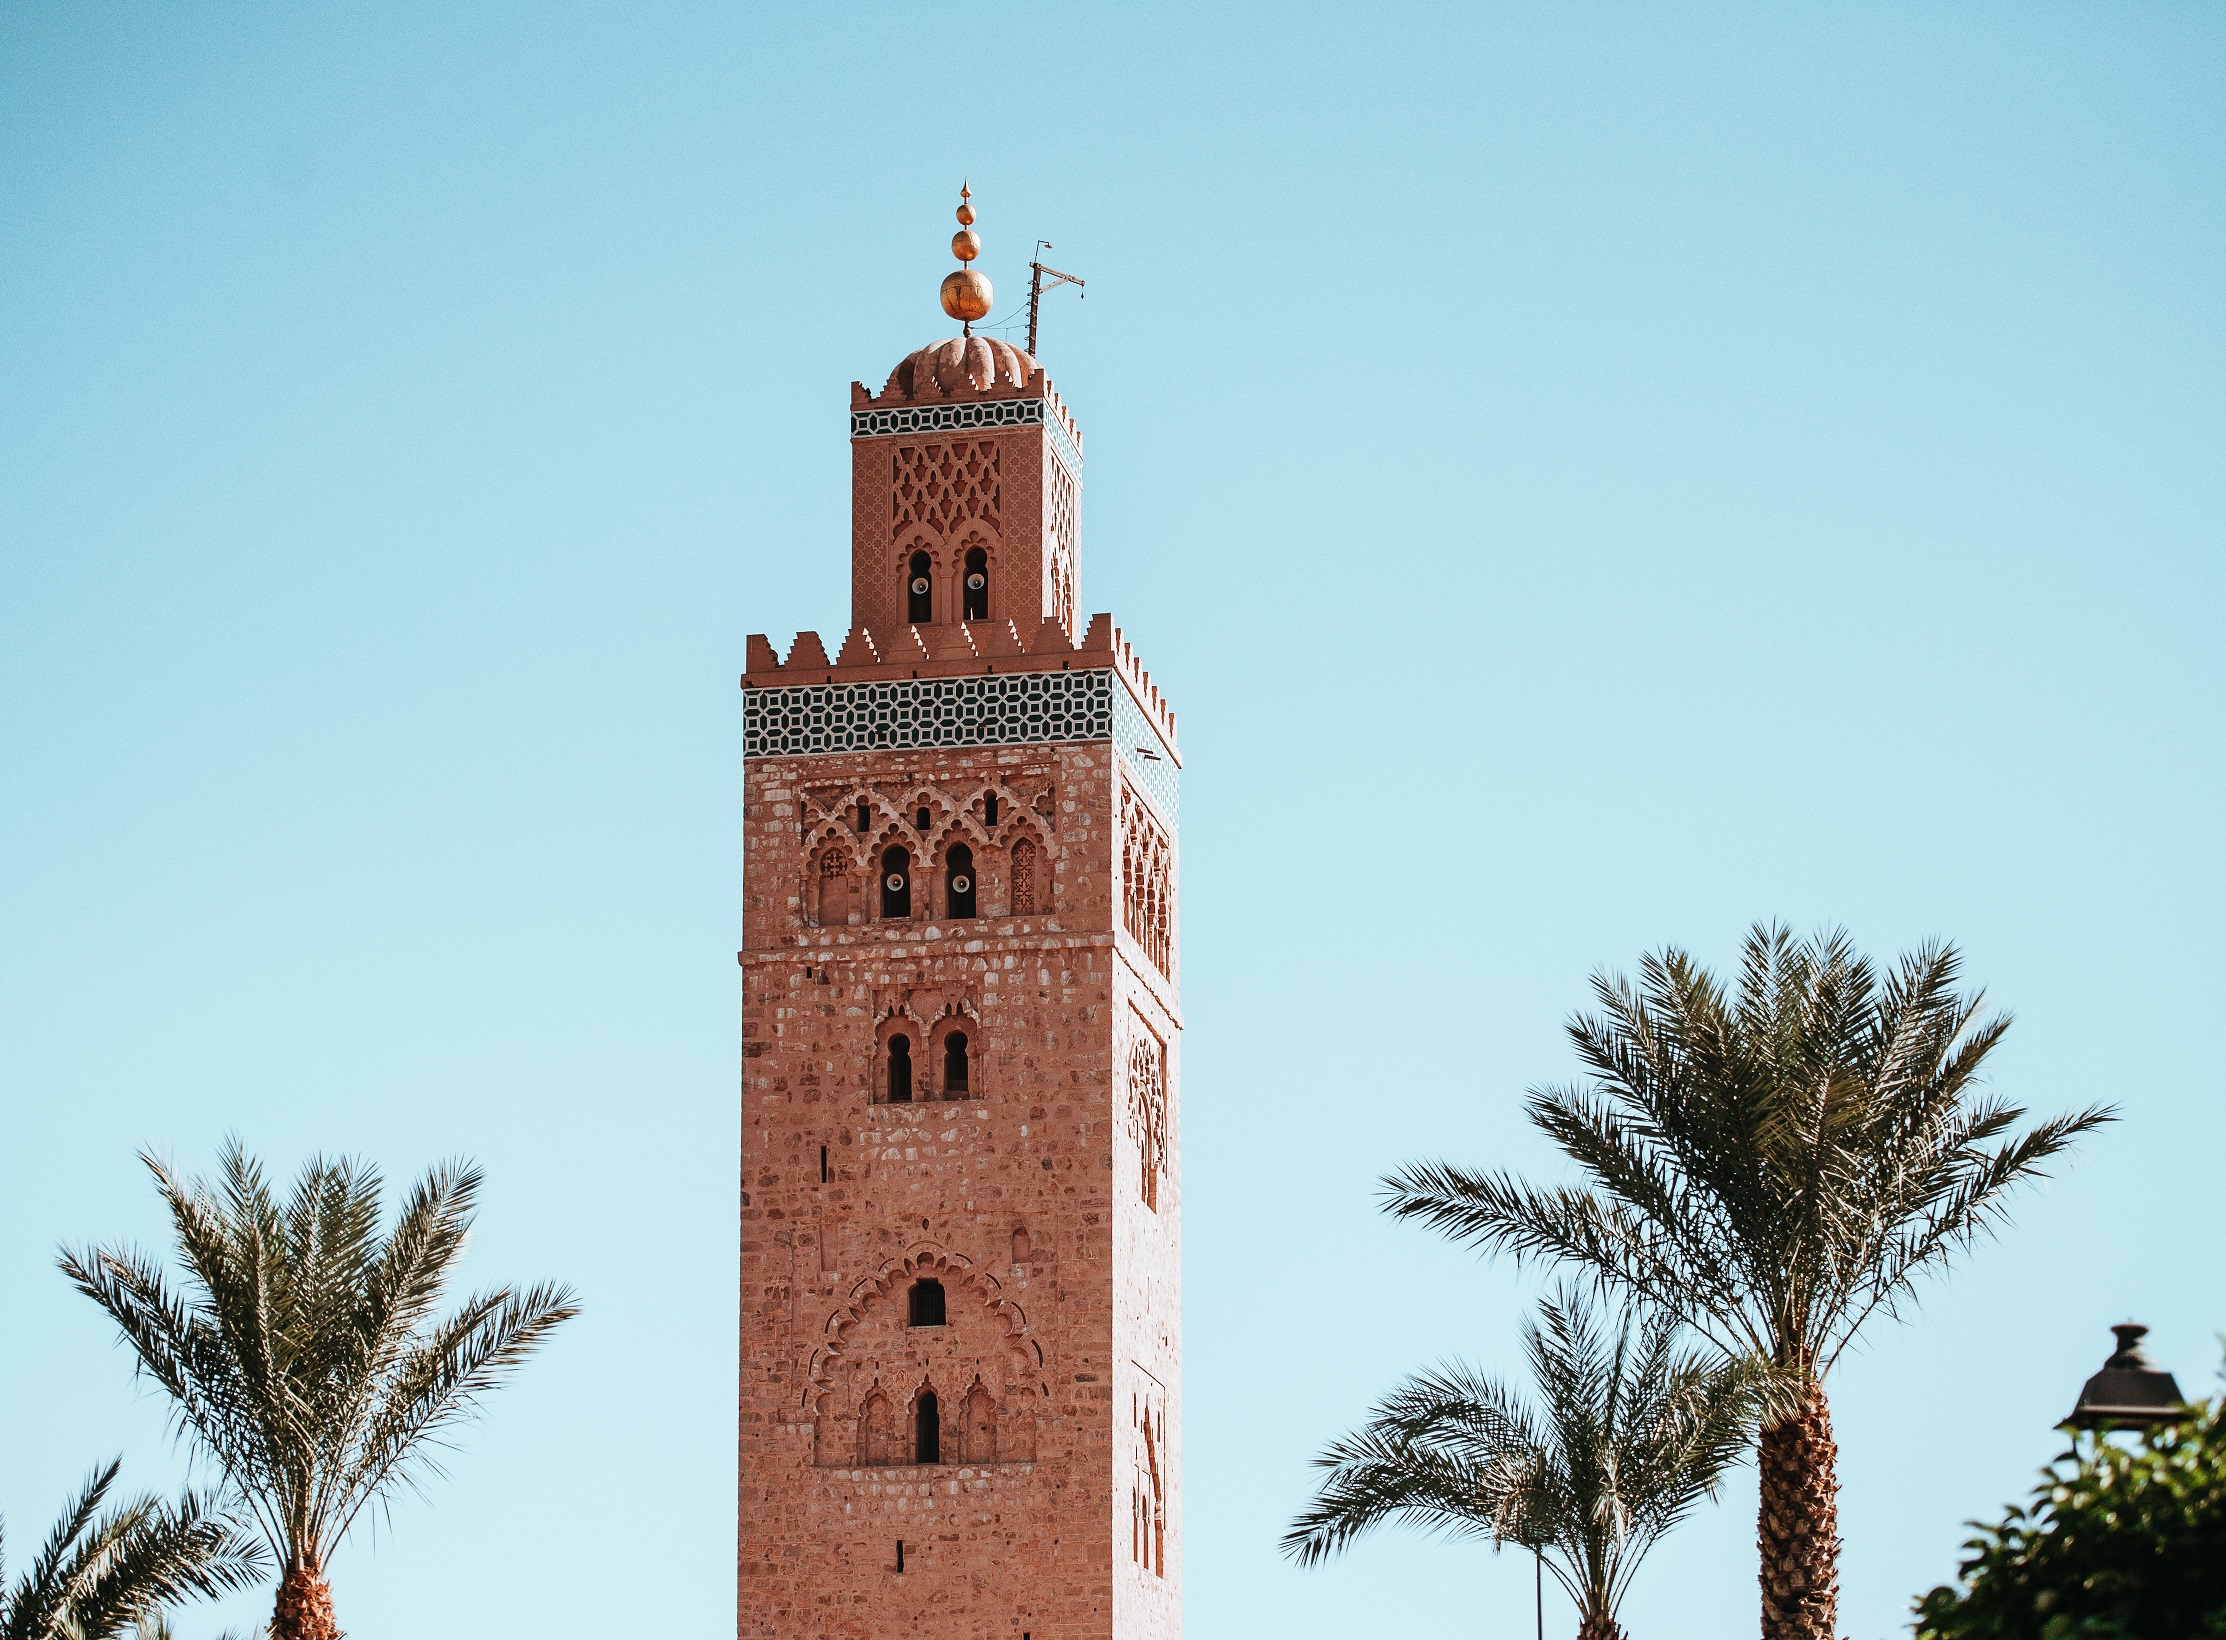 Day 04: Zagora - Marrakech